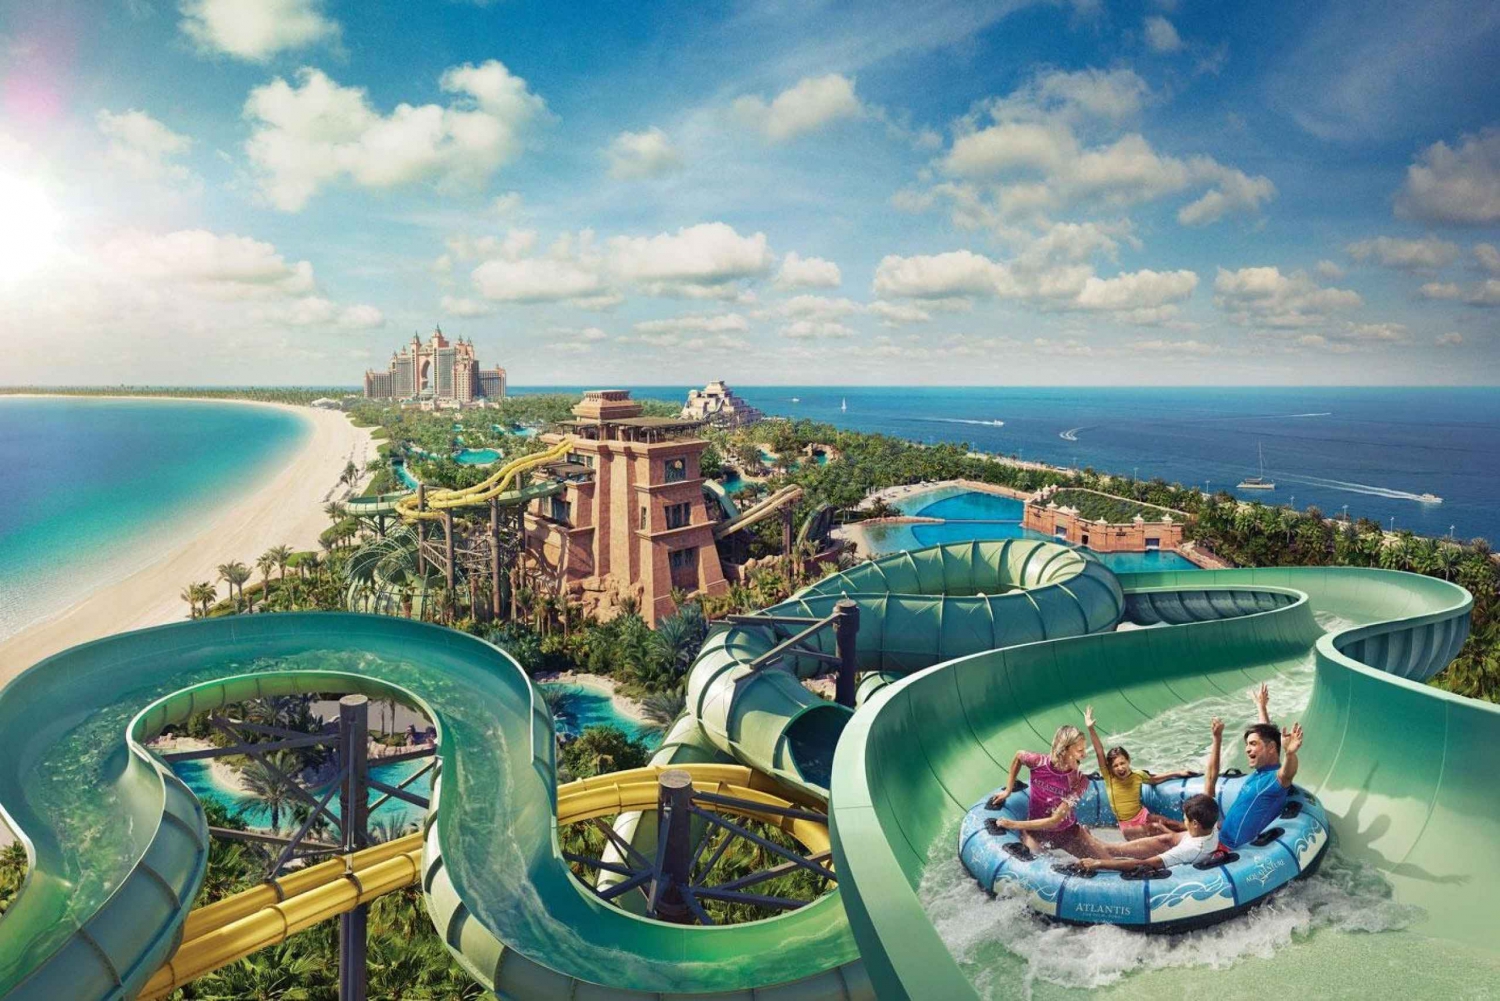 Dubai: Biglietto d'ingresso all'Atlantis Aquaventure con trasferimenti